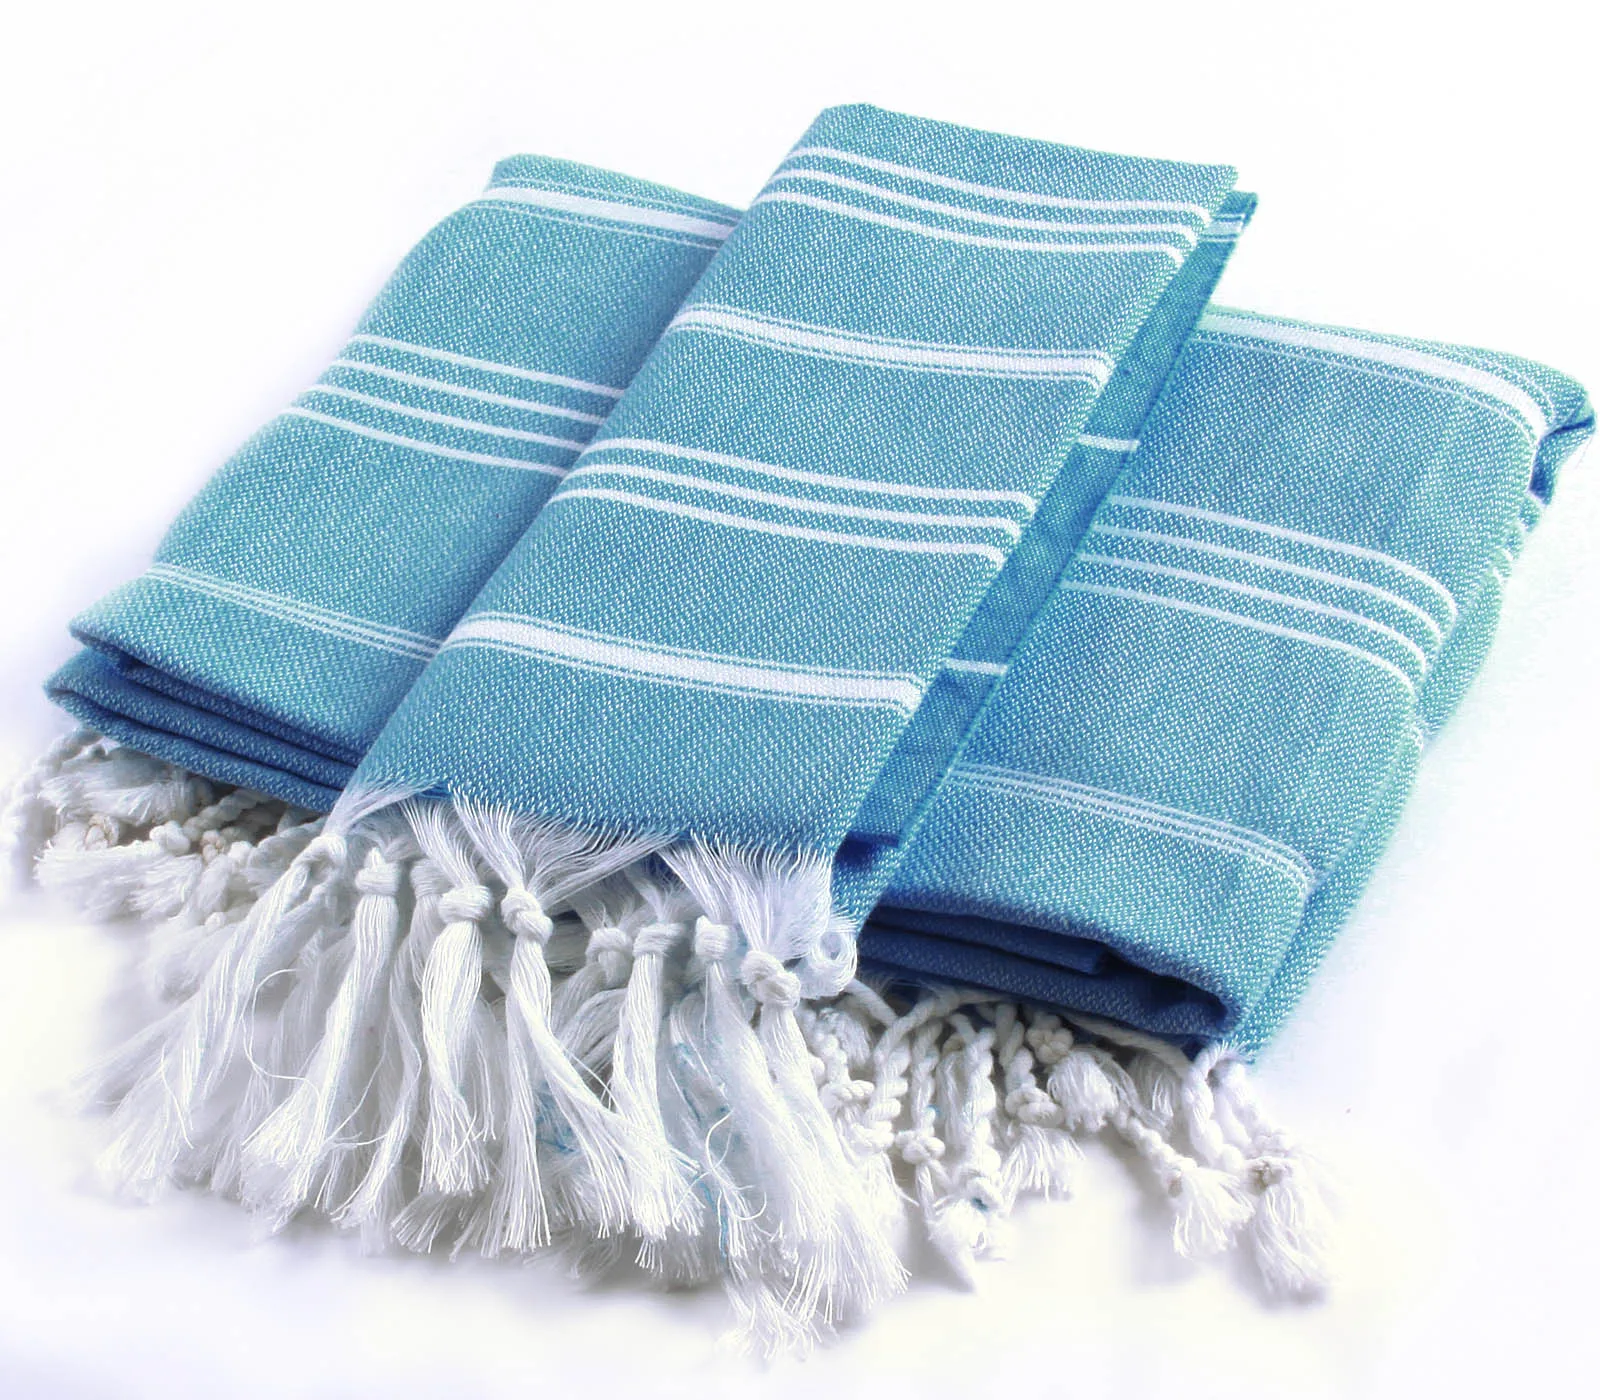 CACALA %100 Cotton 2 Pieces Turkish Towel Pestemal Set - 1 Piece 100x180Cm Bath Beach Towel 1 Piece 60x90Cm Hand Face Towel